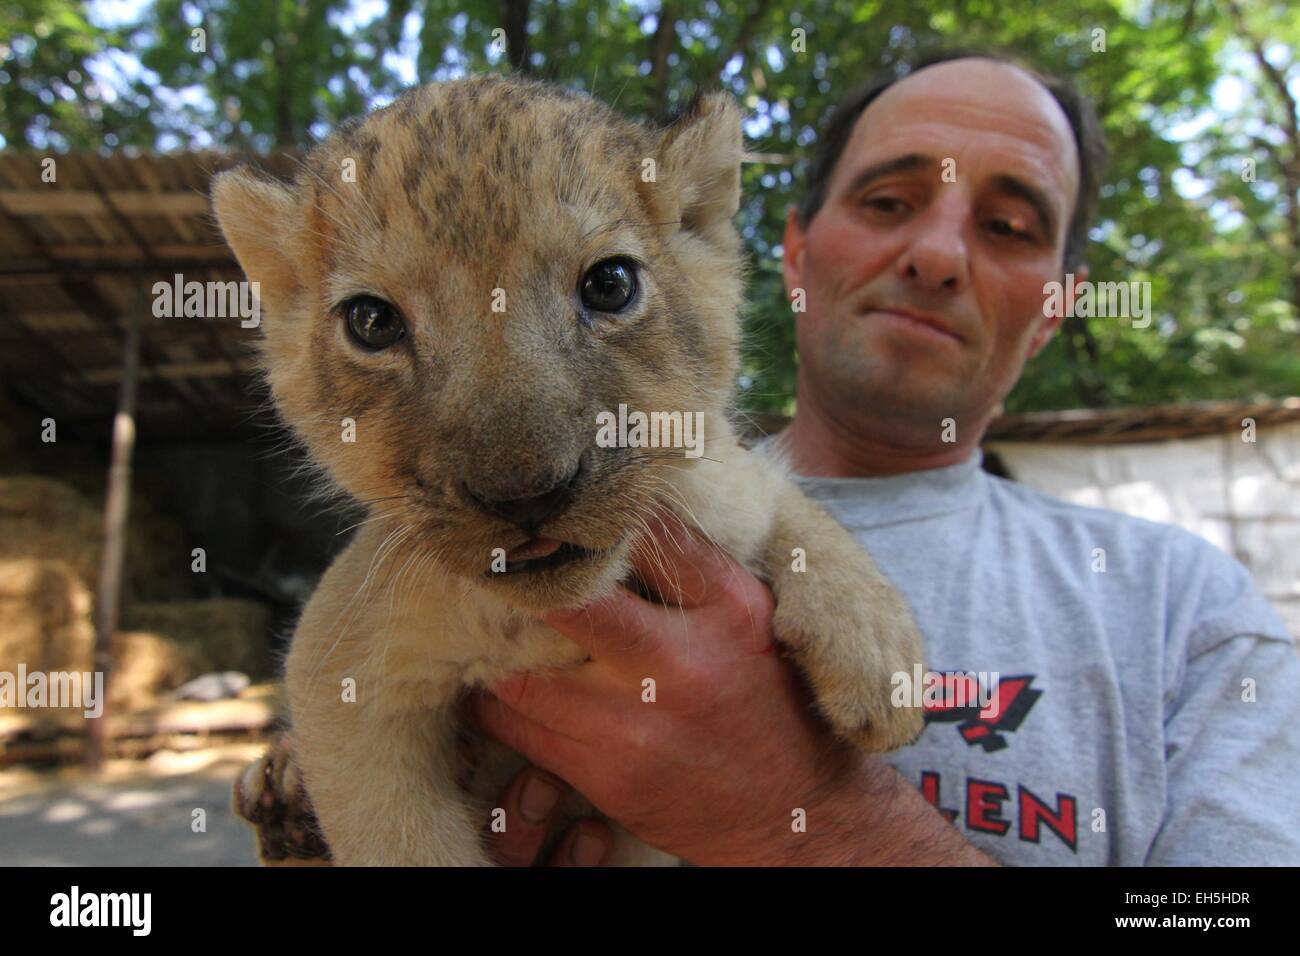 Un zookeeper juega con 30 días de edad, todavía sin nombre, de los leones  en el Zoológico de la ciudad de Razgrad, al noreste de la capital búlgara  Sofía (02Sep14), después de